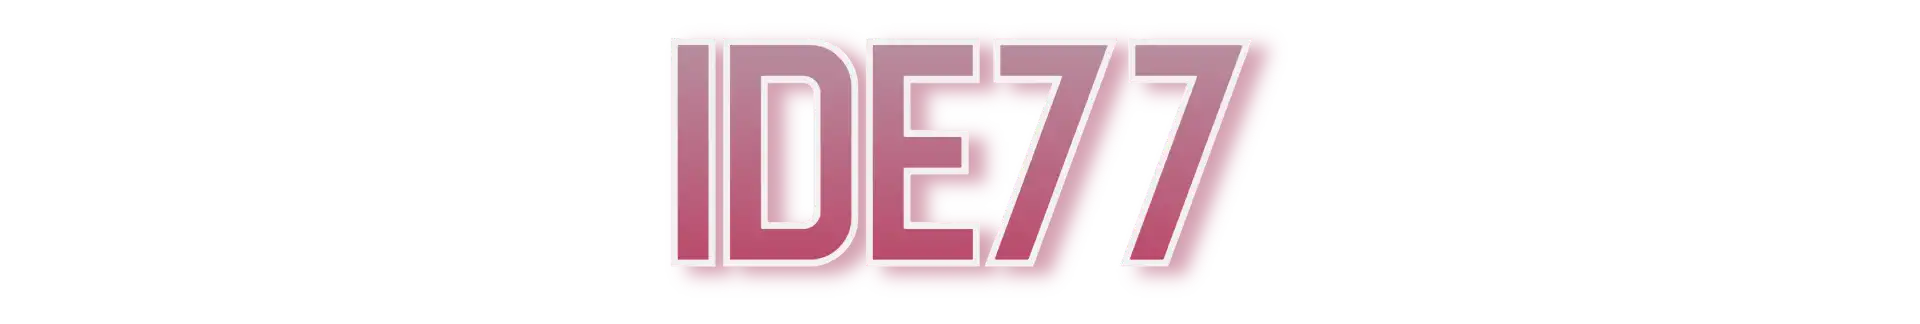 Ide77